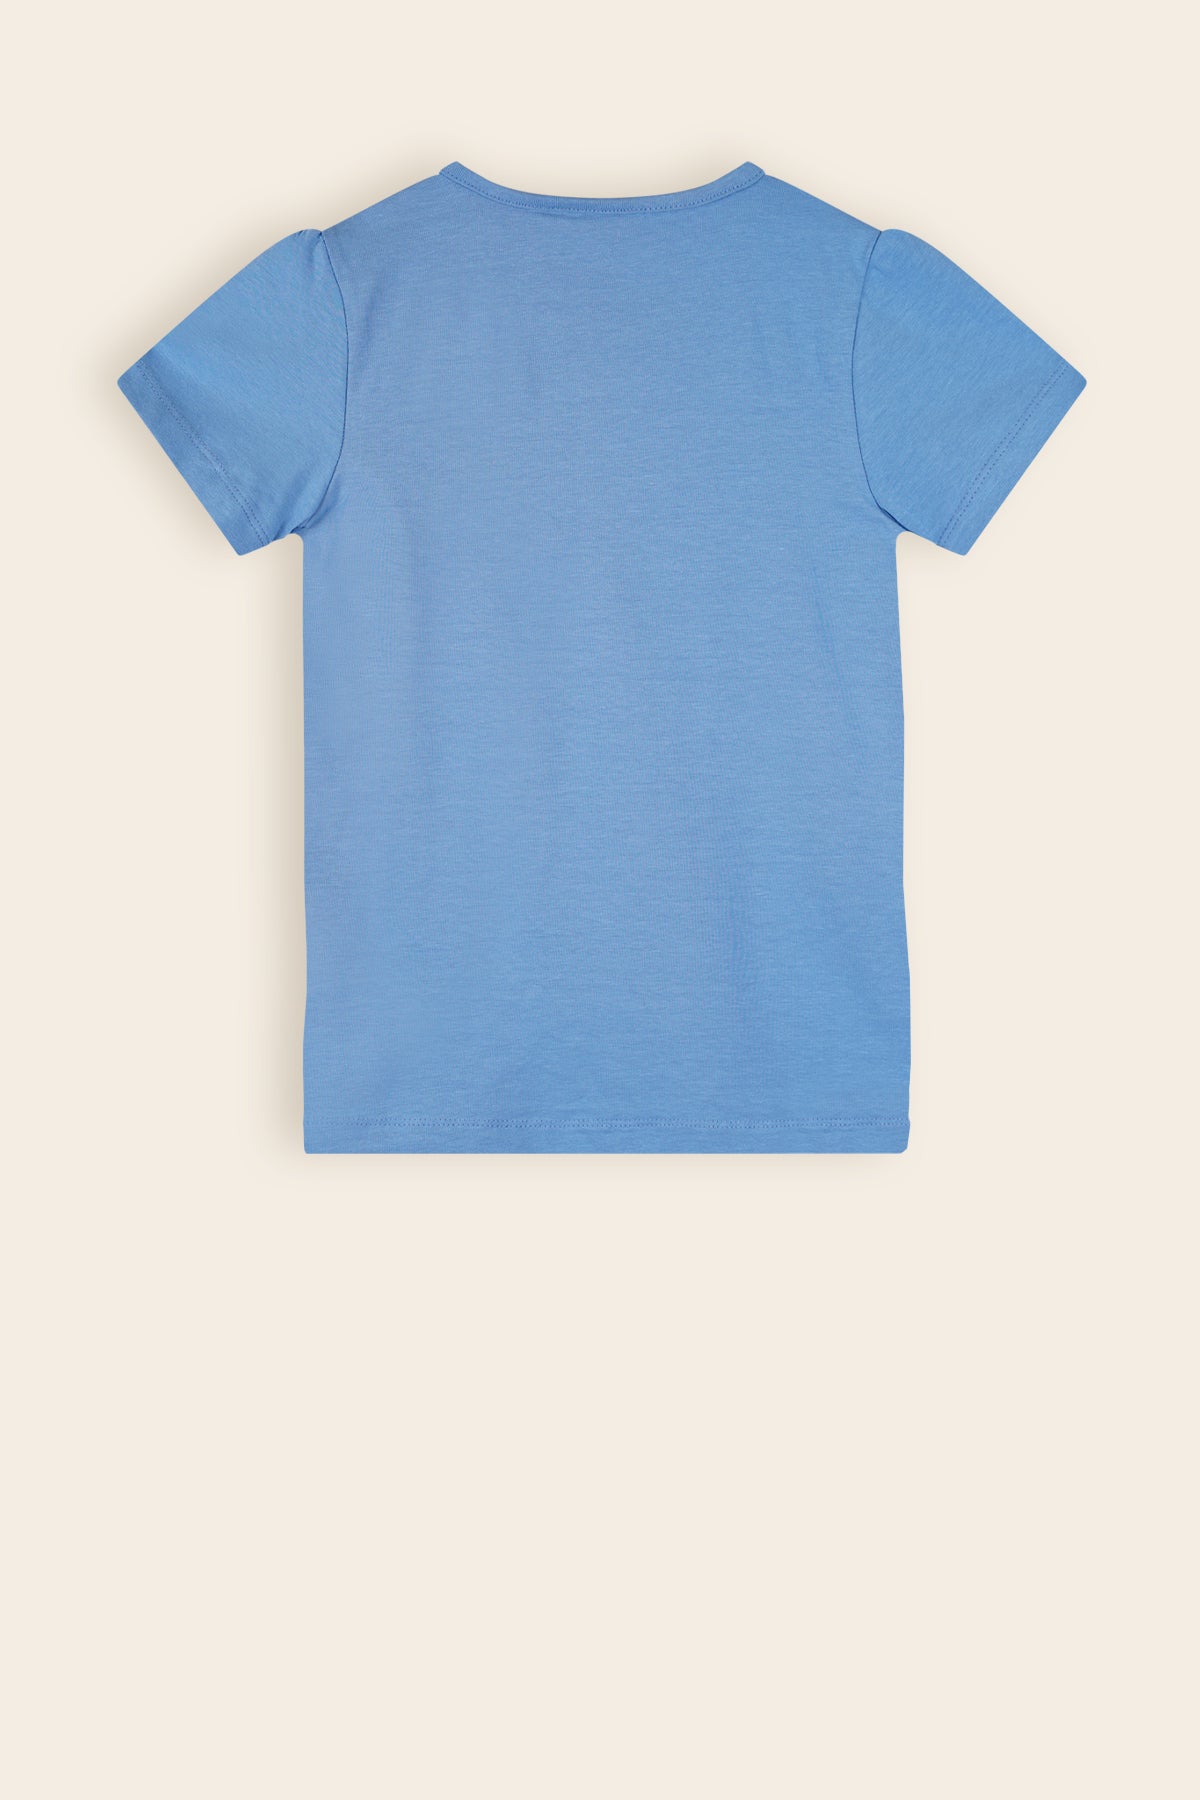 Kono Basic Tshirt Blauw